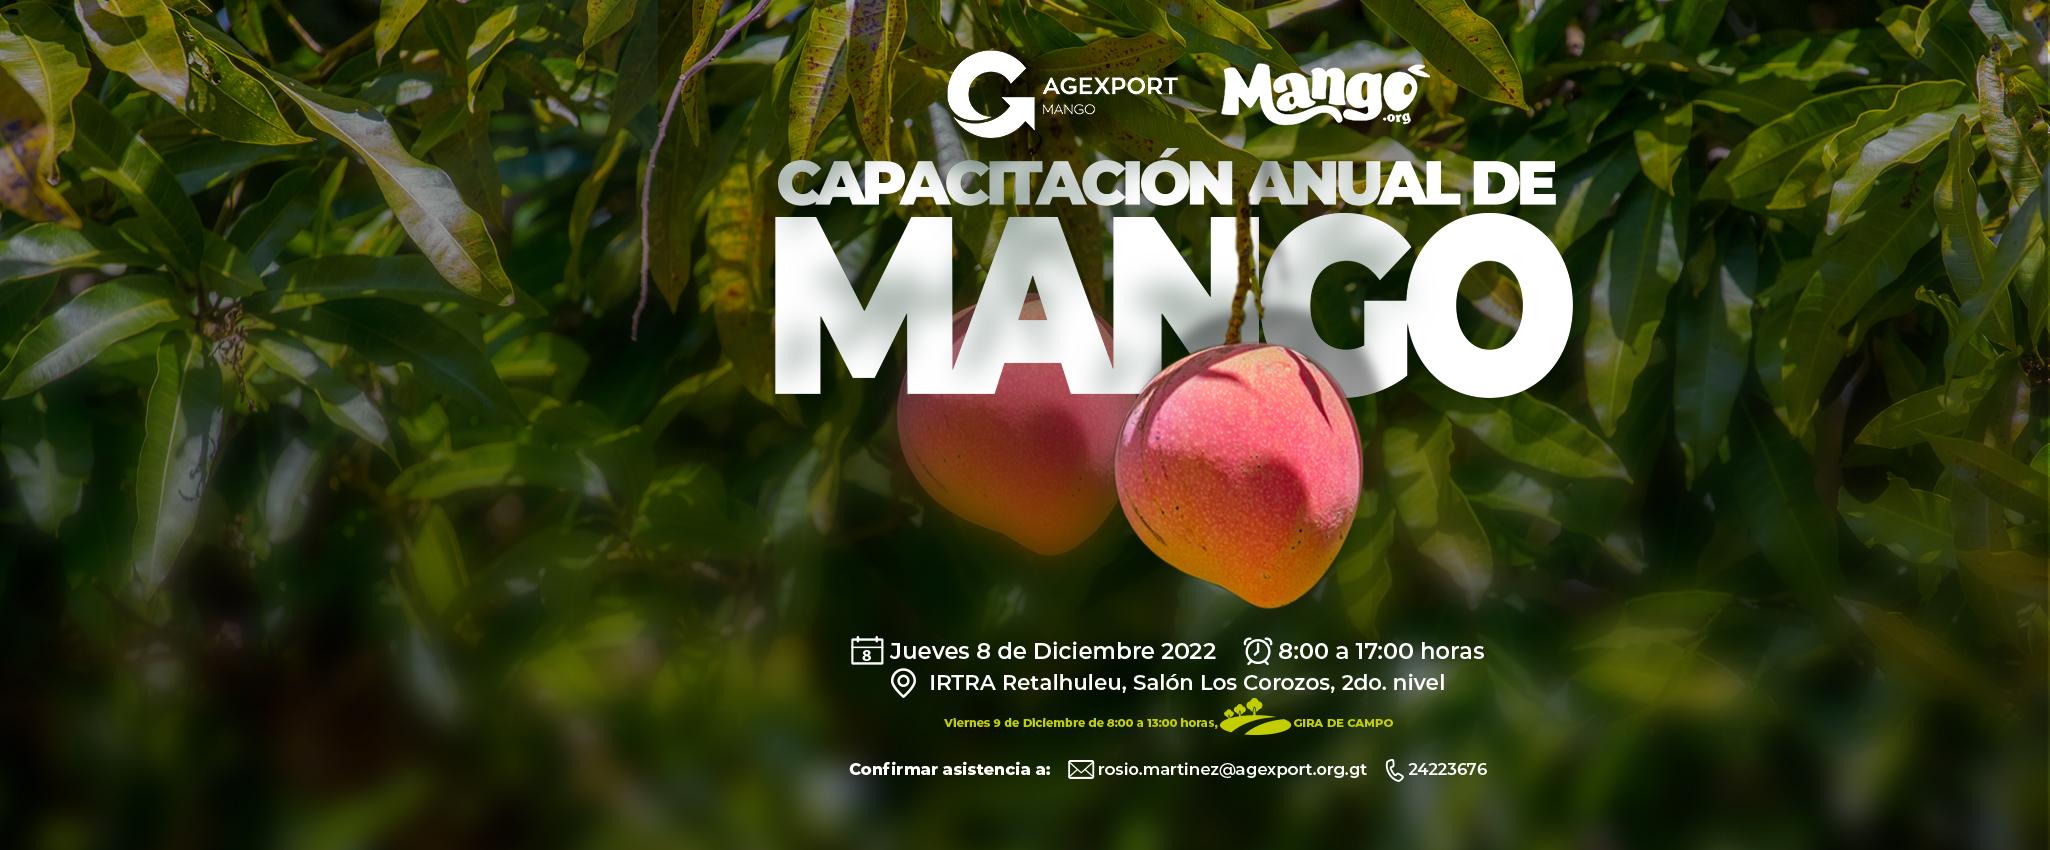 Capacitación anual de mango